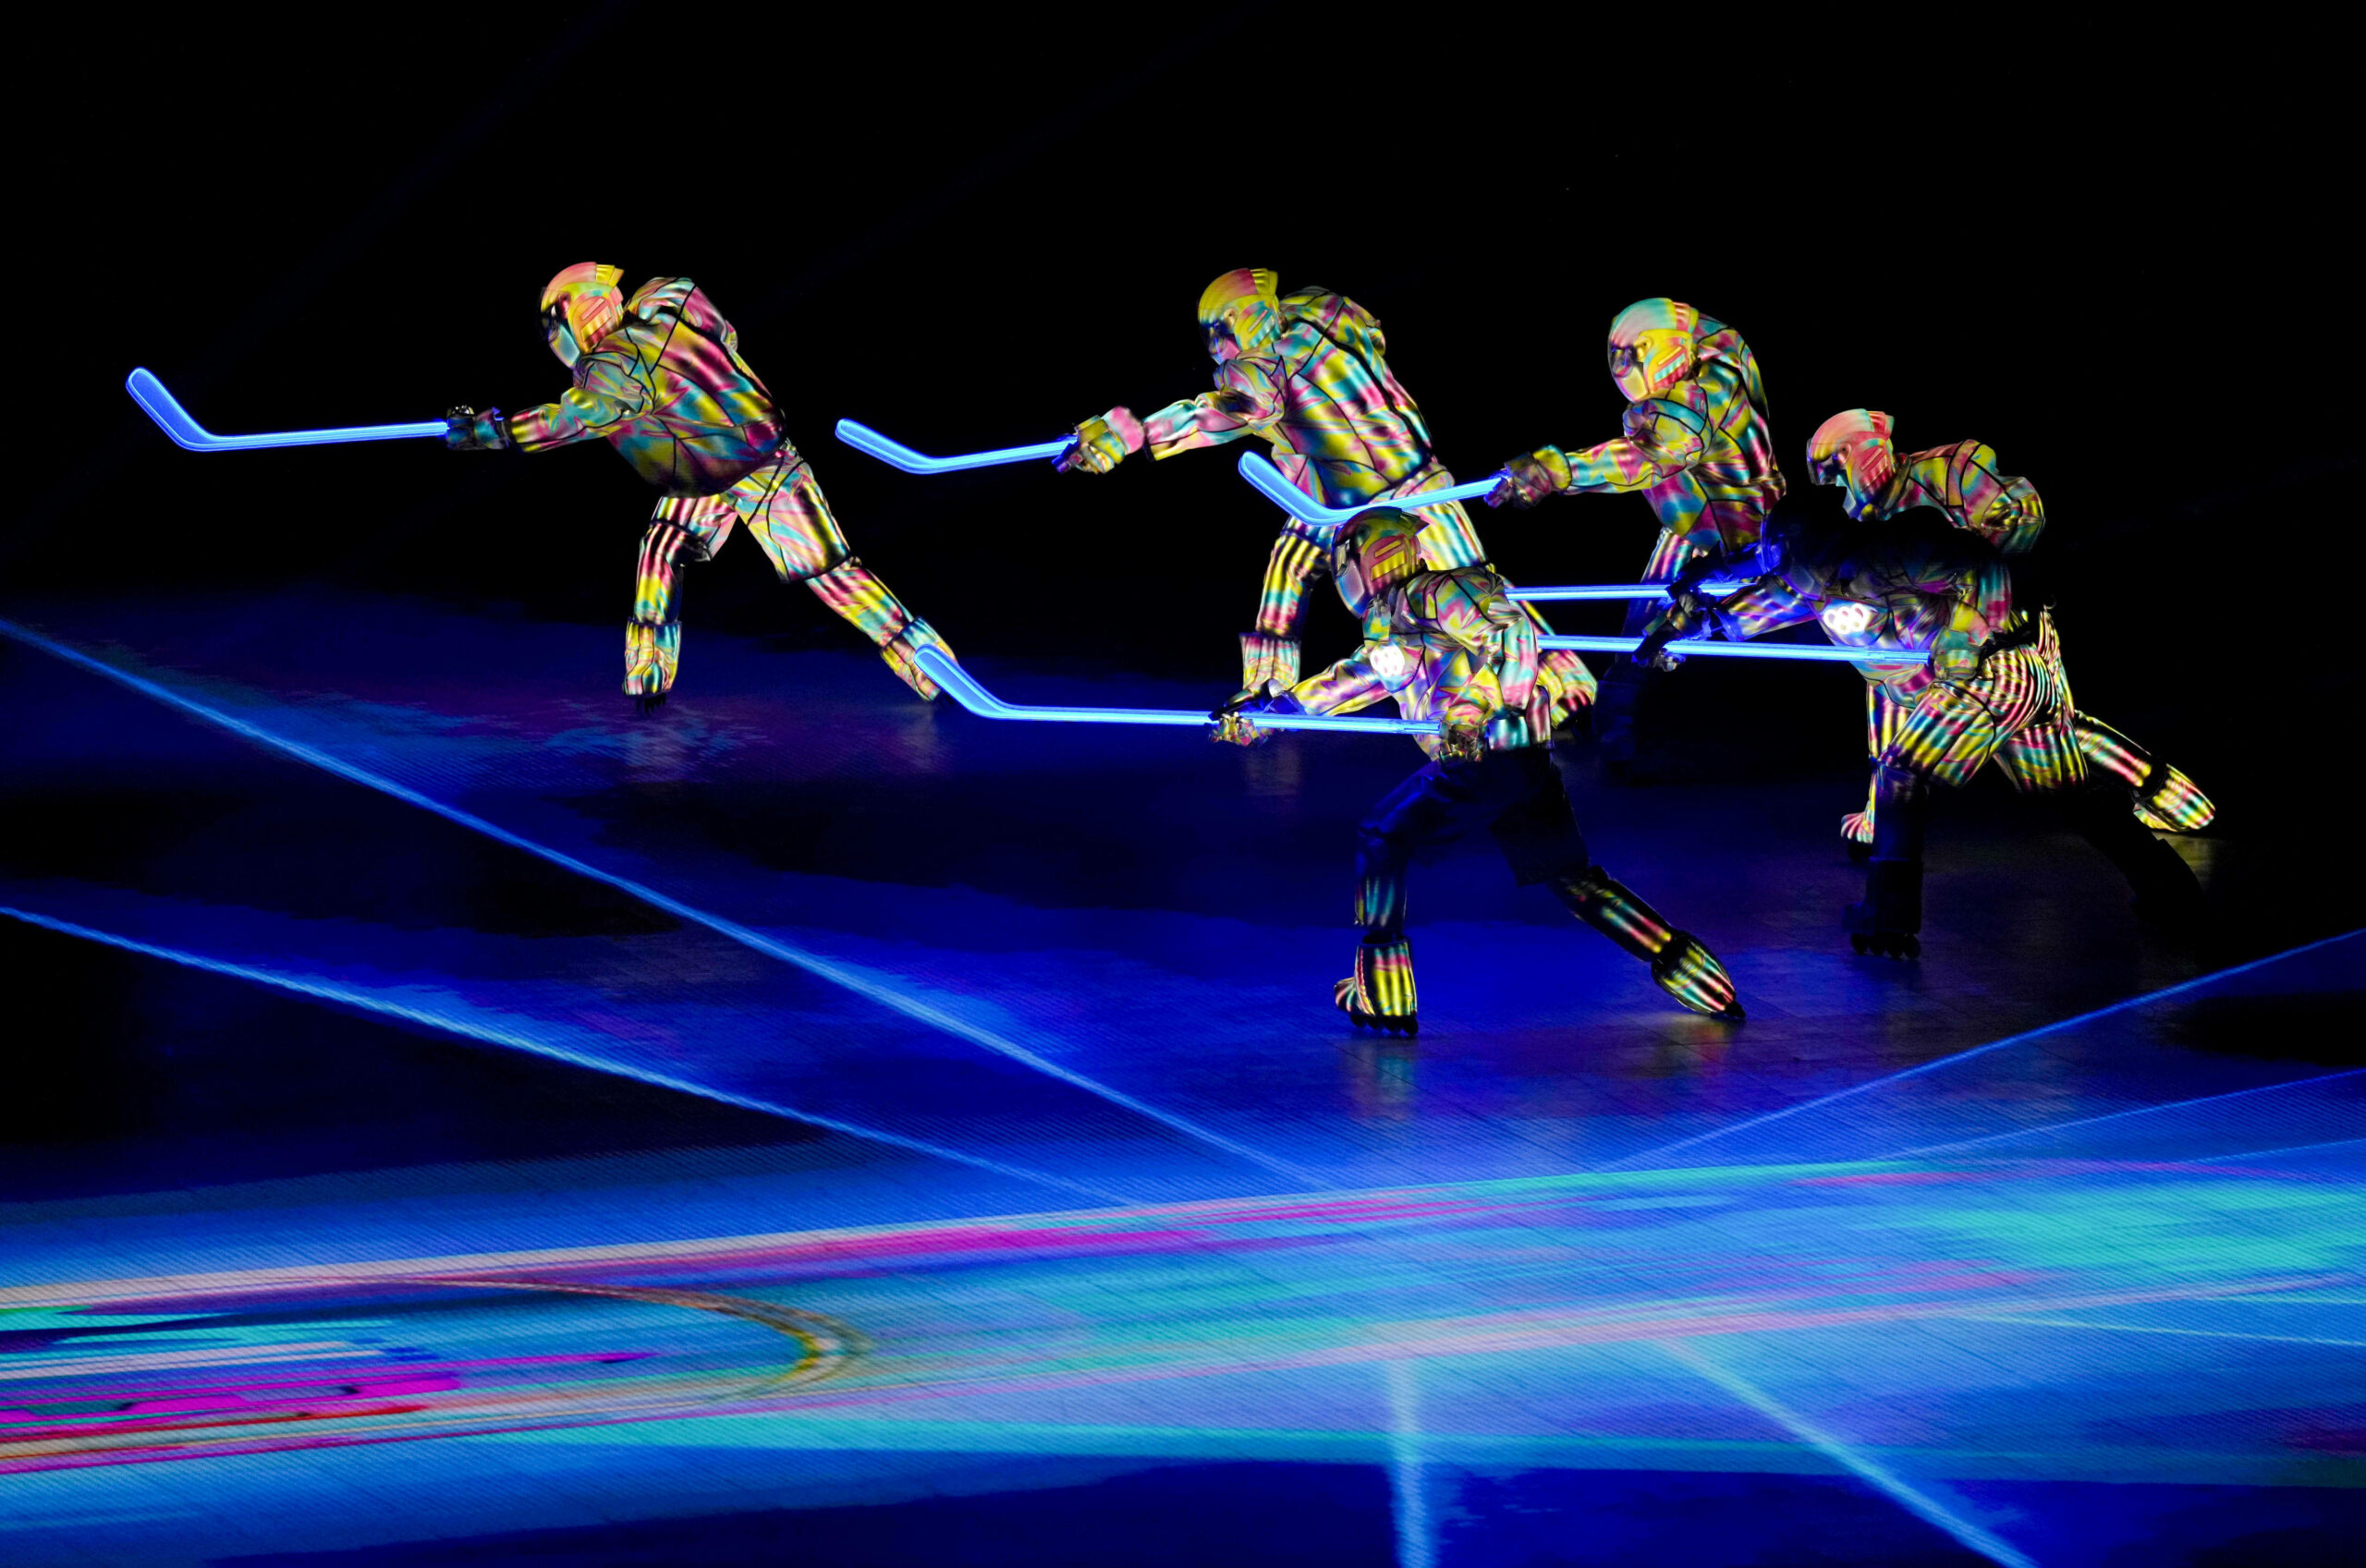 Выступление артистов на церемонии открытия зимних Олимпийских игр 2022 года в Пекине. 4 февраля 2022 года. Фото Li An/Xinhua/Scanpix/LETA